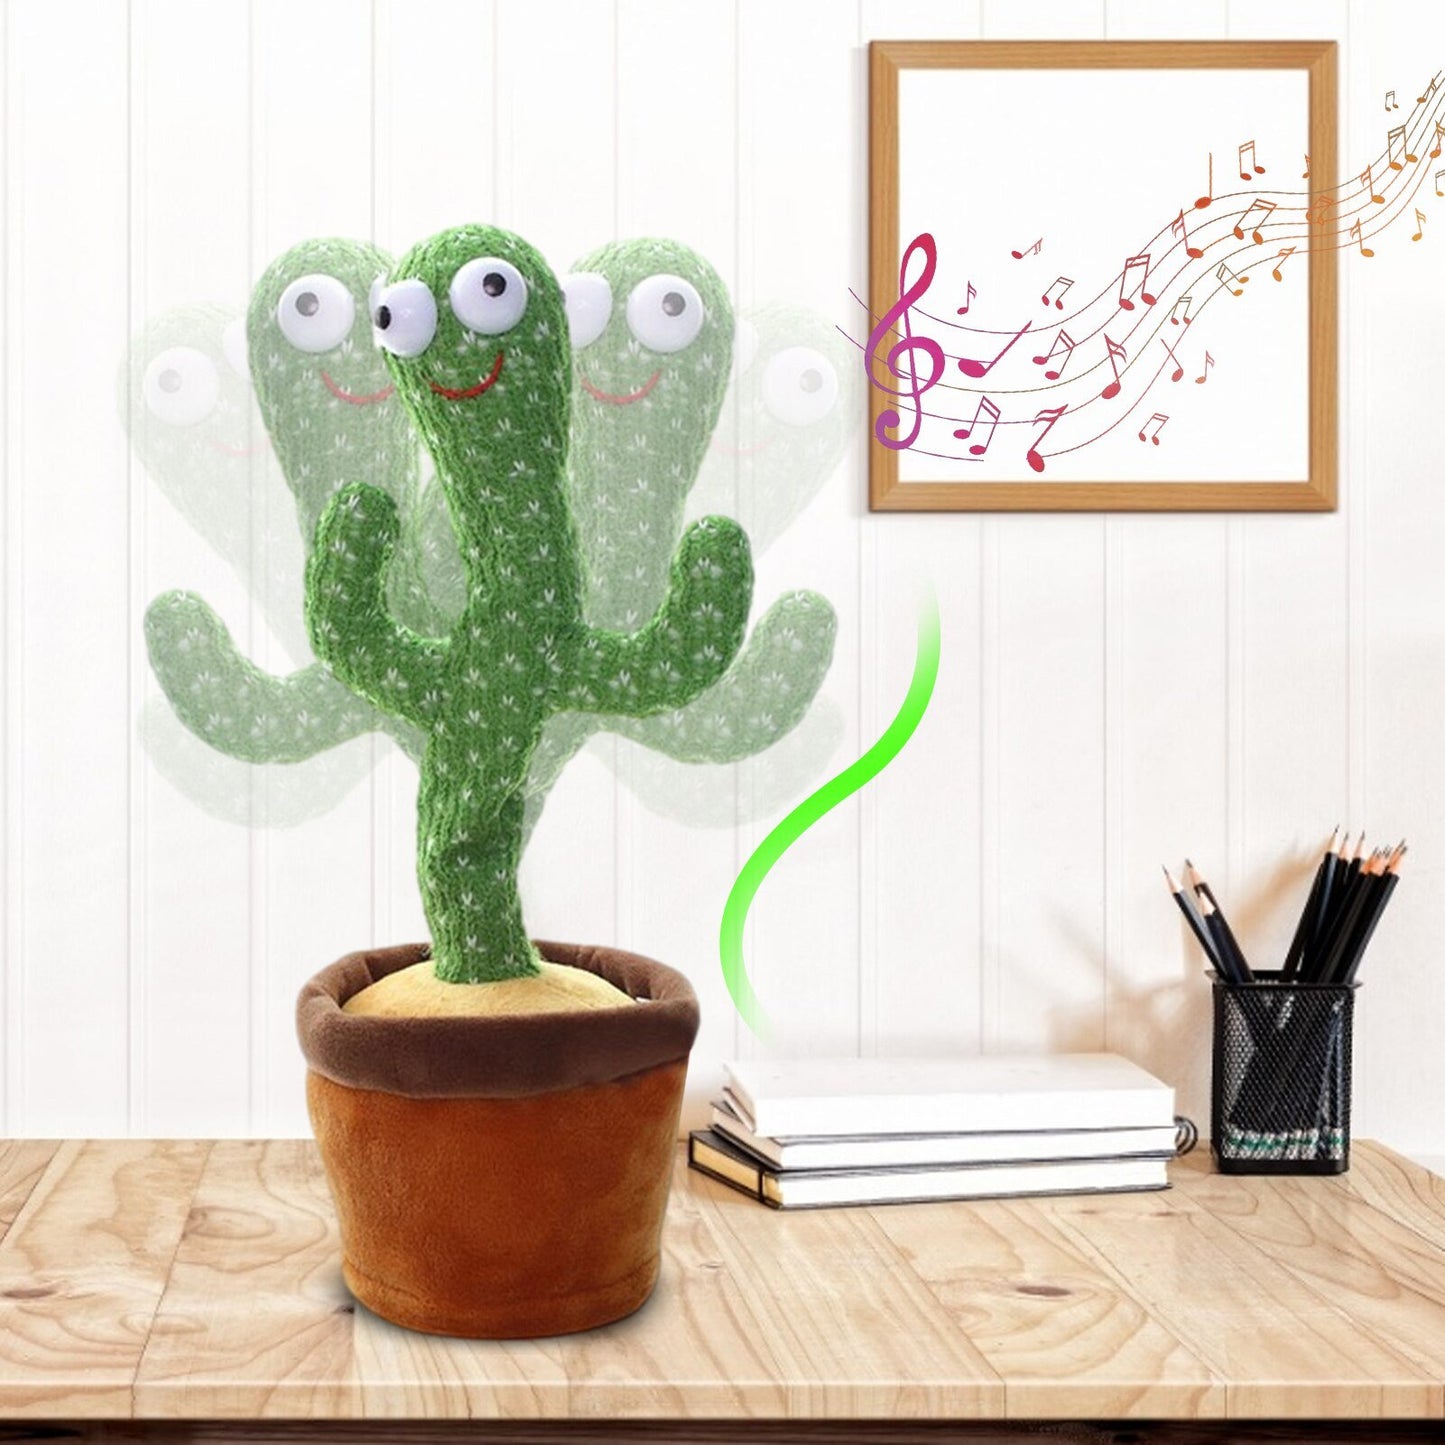 Cactus Dansant qui parle & répète - El Gringo